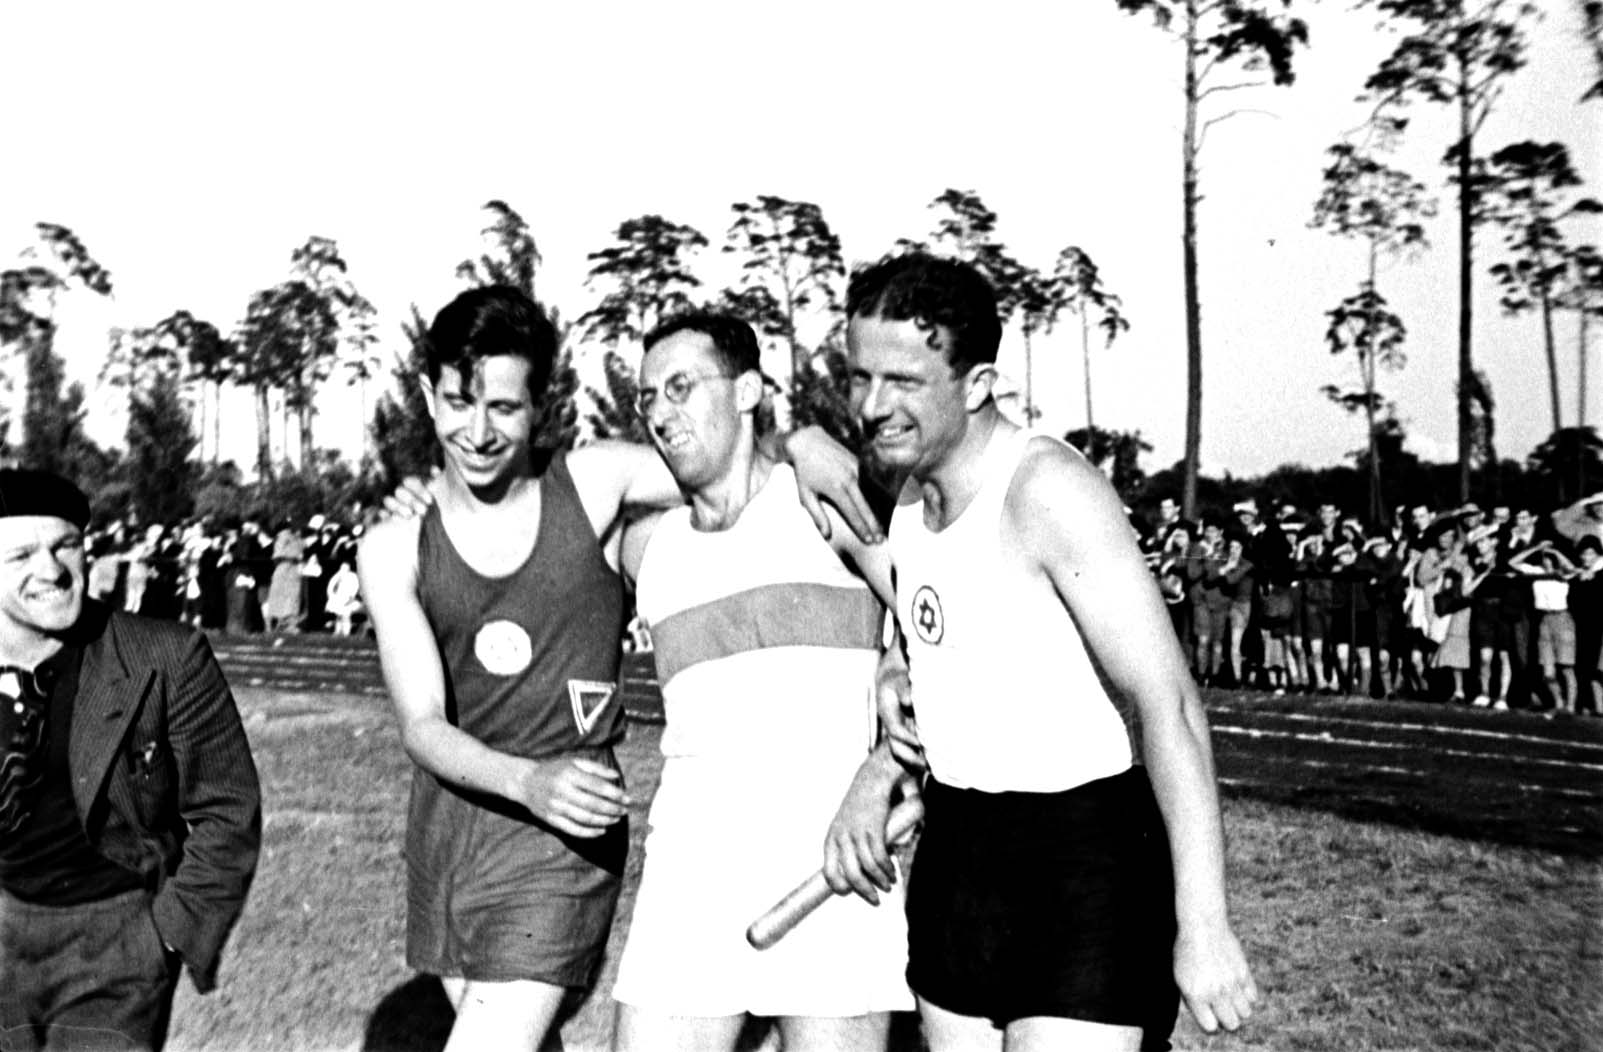 ברלין, גרמניה, 16 ביוני 1935, פרנקנשטיין (Frankenstein), דרייר (Dreyer) ואורגלר (Orgler), אתלטים בענפי ספורט המסלול והשדה ביום הספורט הבינלאומי של מכבי ברלין